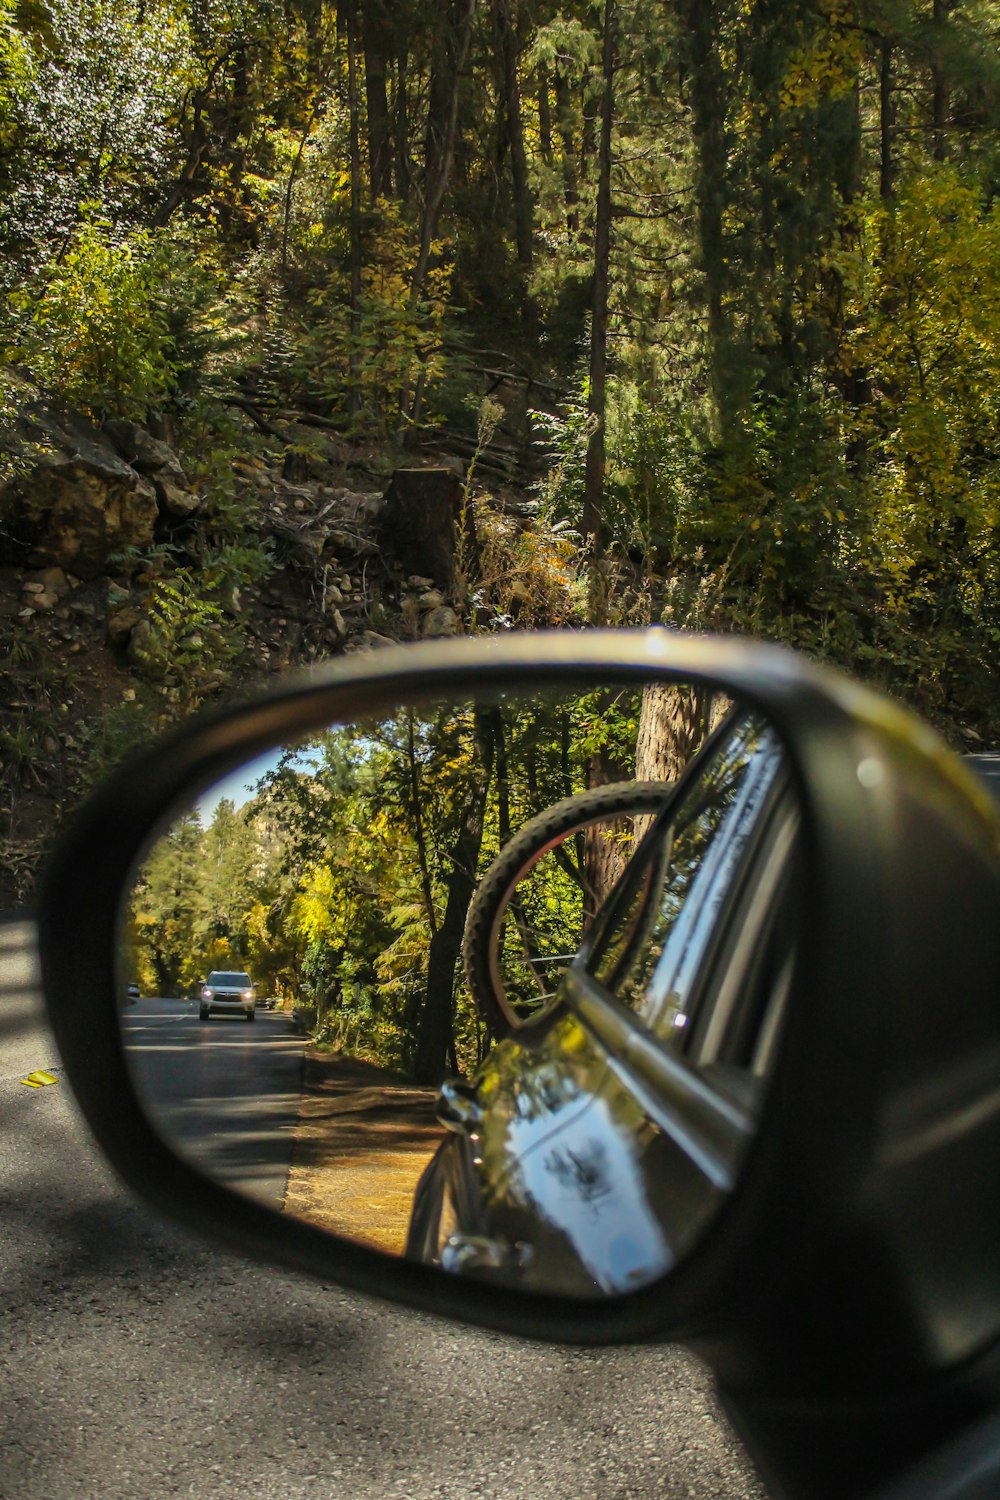 Reflejo del coche y los árboles en el espejo retrovisor del vehículo